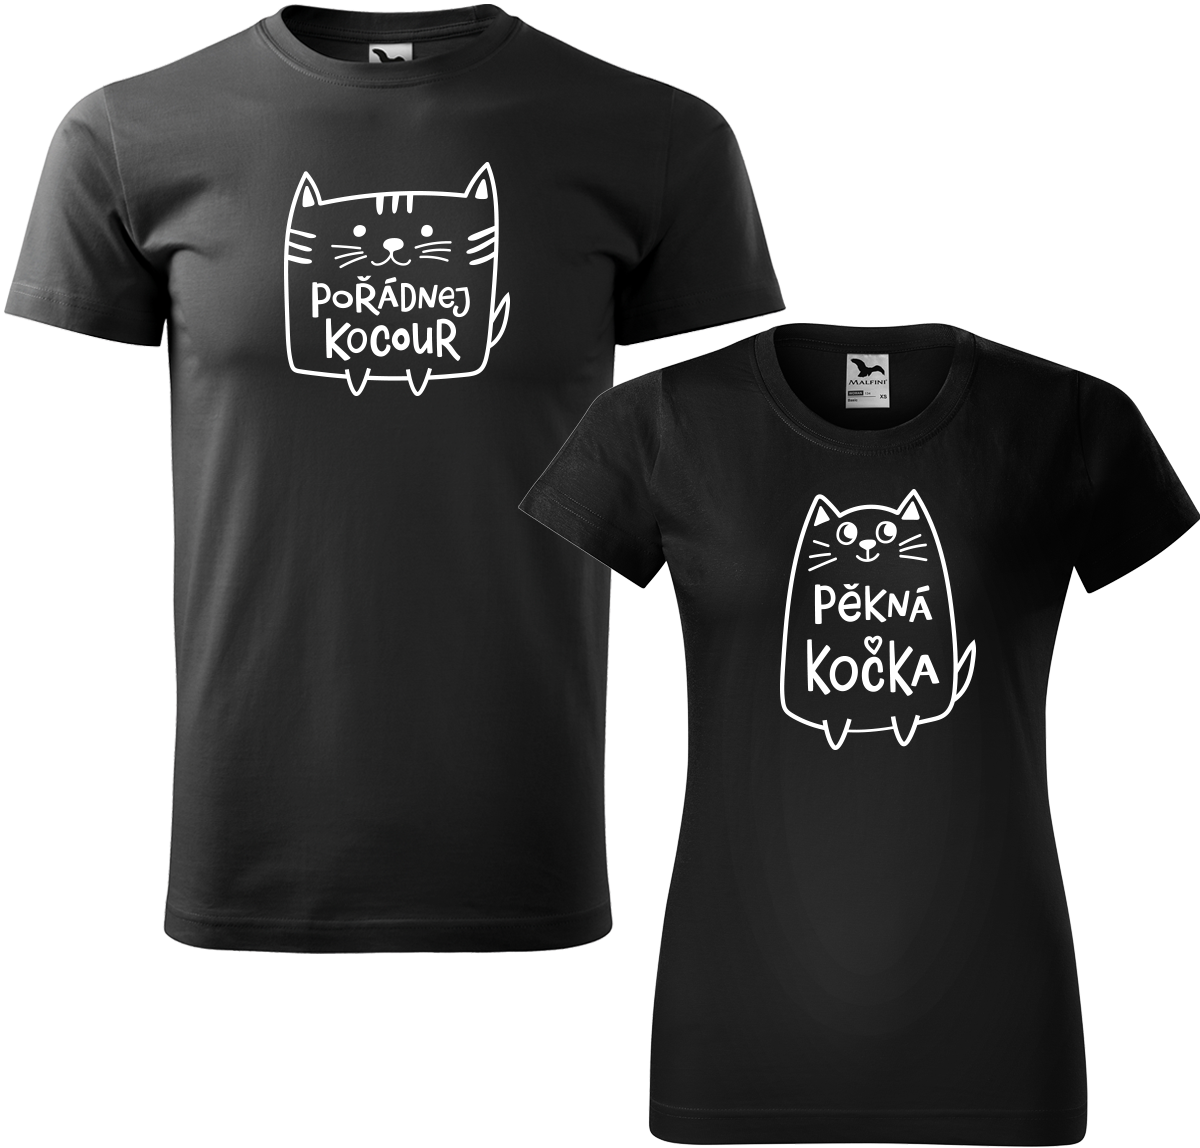 Trička pro páry - Pořádnej kocour a pěkná kočka Barva: Černá (01), Velikost dámské tričko: 2XL, Velikost pánské tričko: 2XL